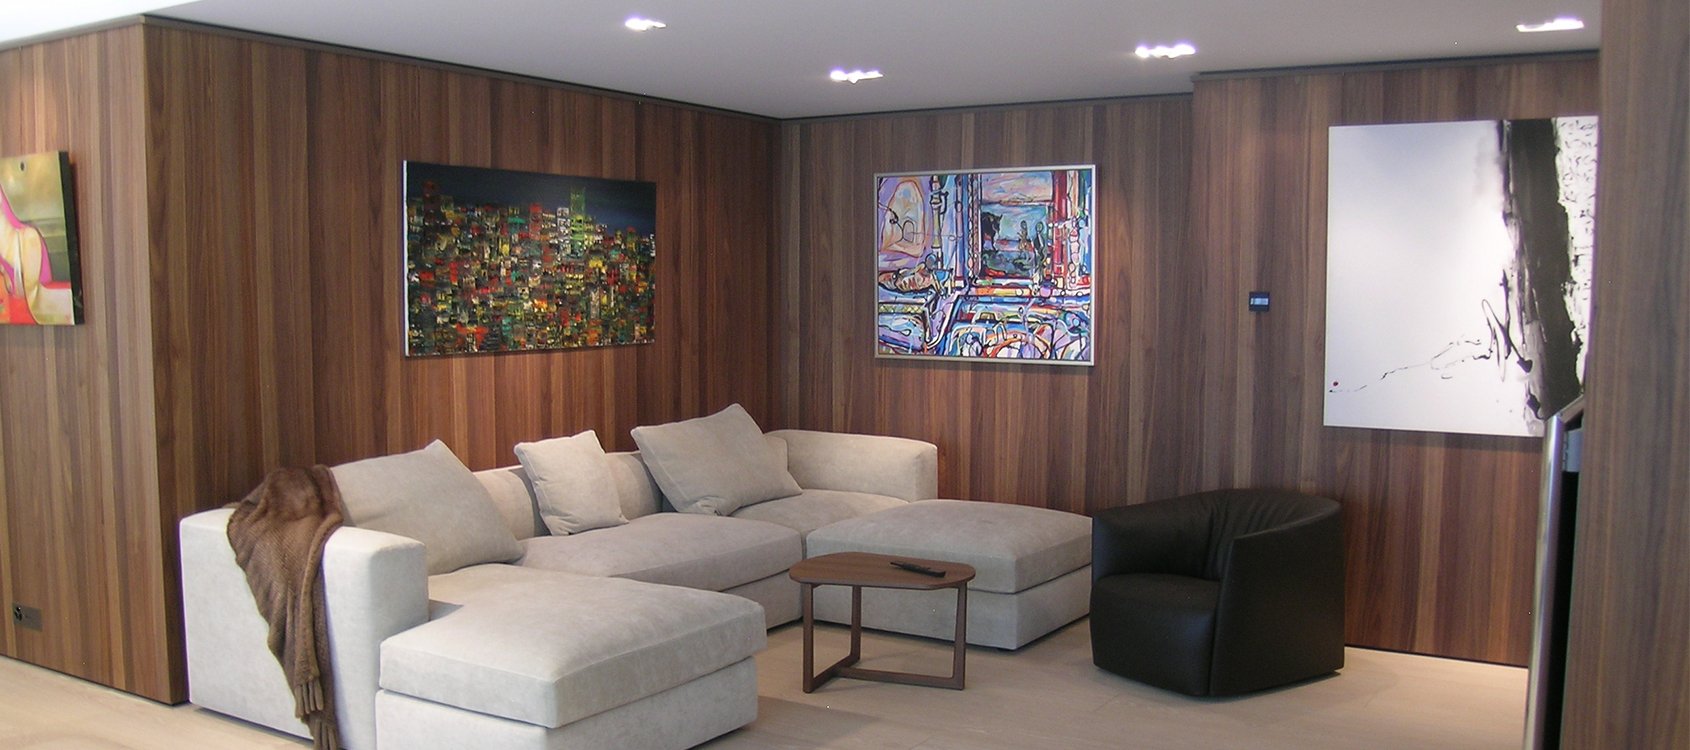 Obrist interior AG - Apartment - Geneva - Switzerland